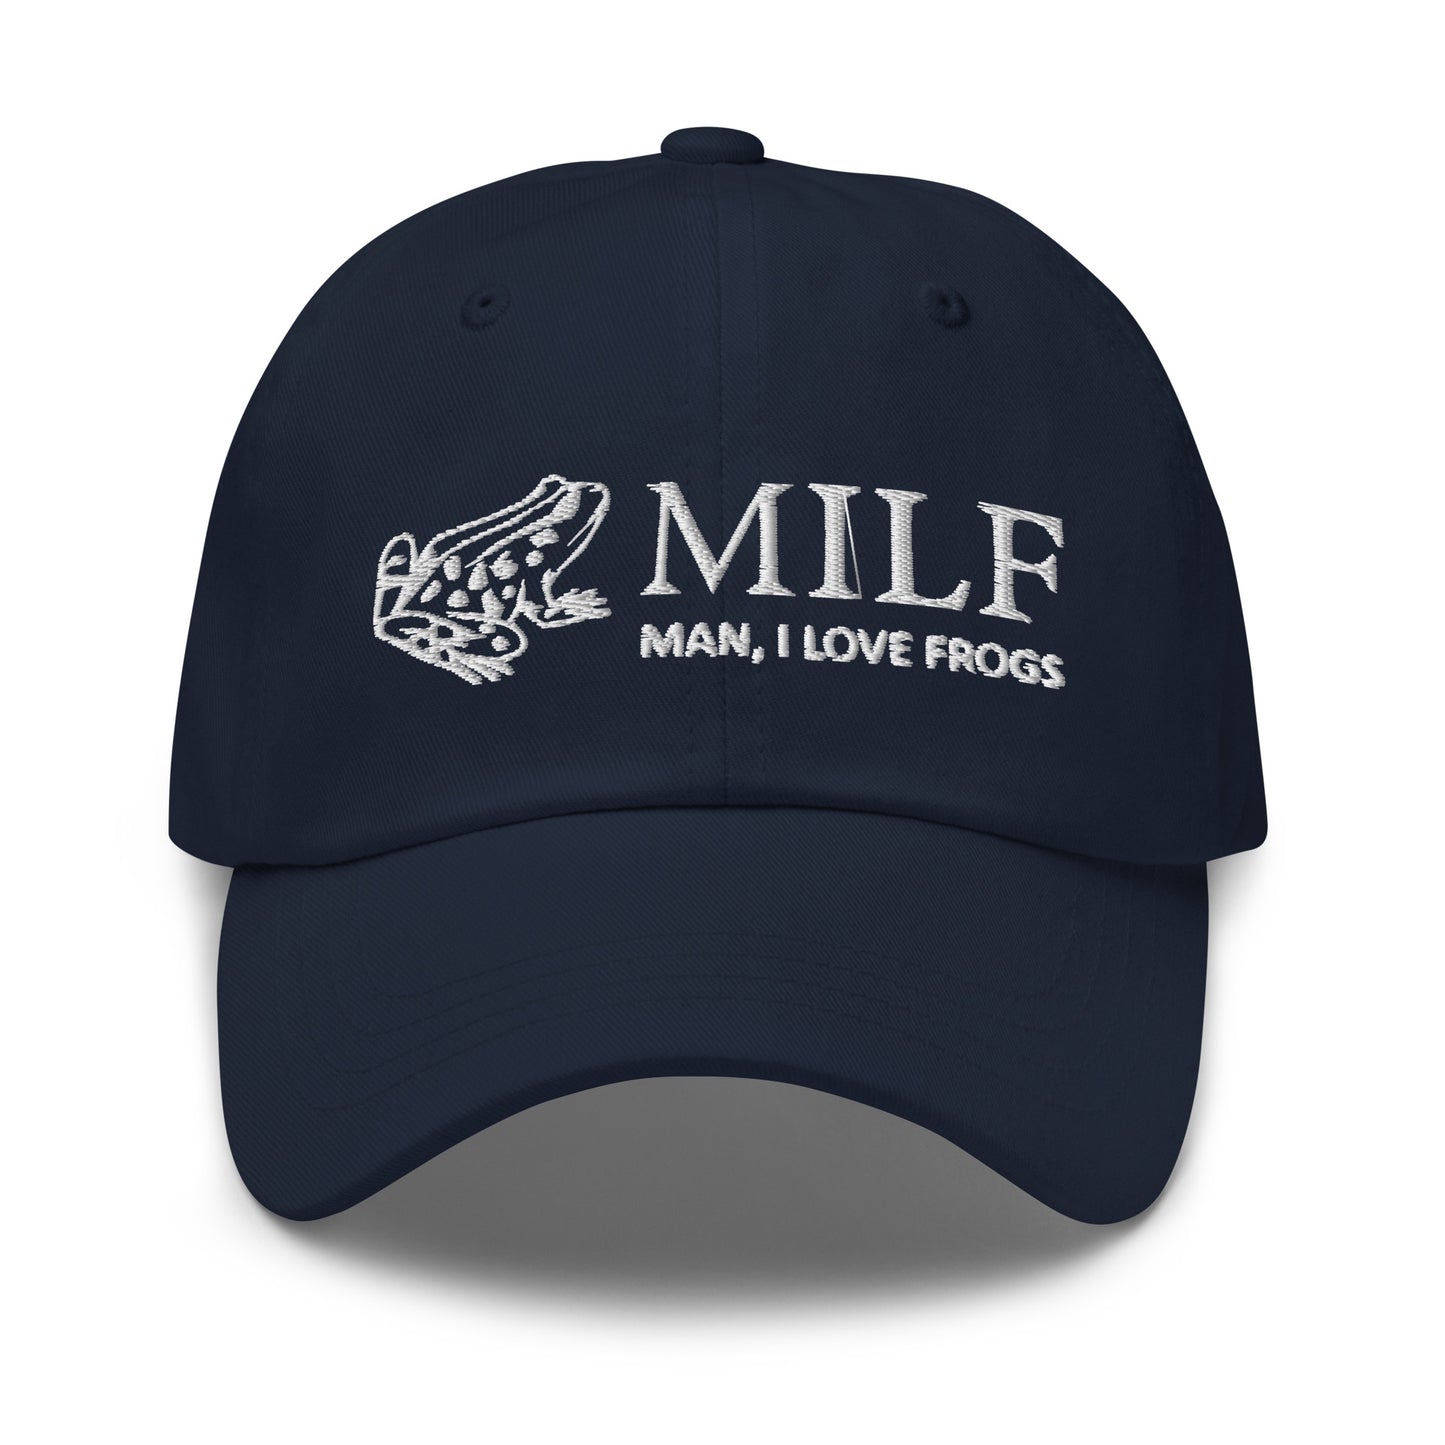 MILF (Man, I Love Frogs) hat